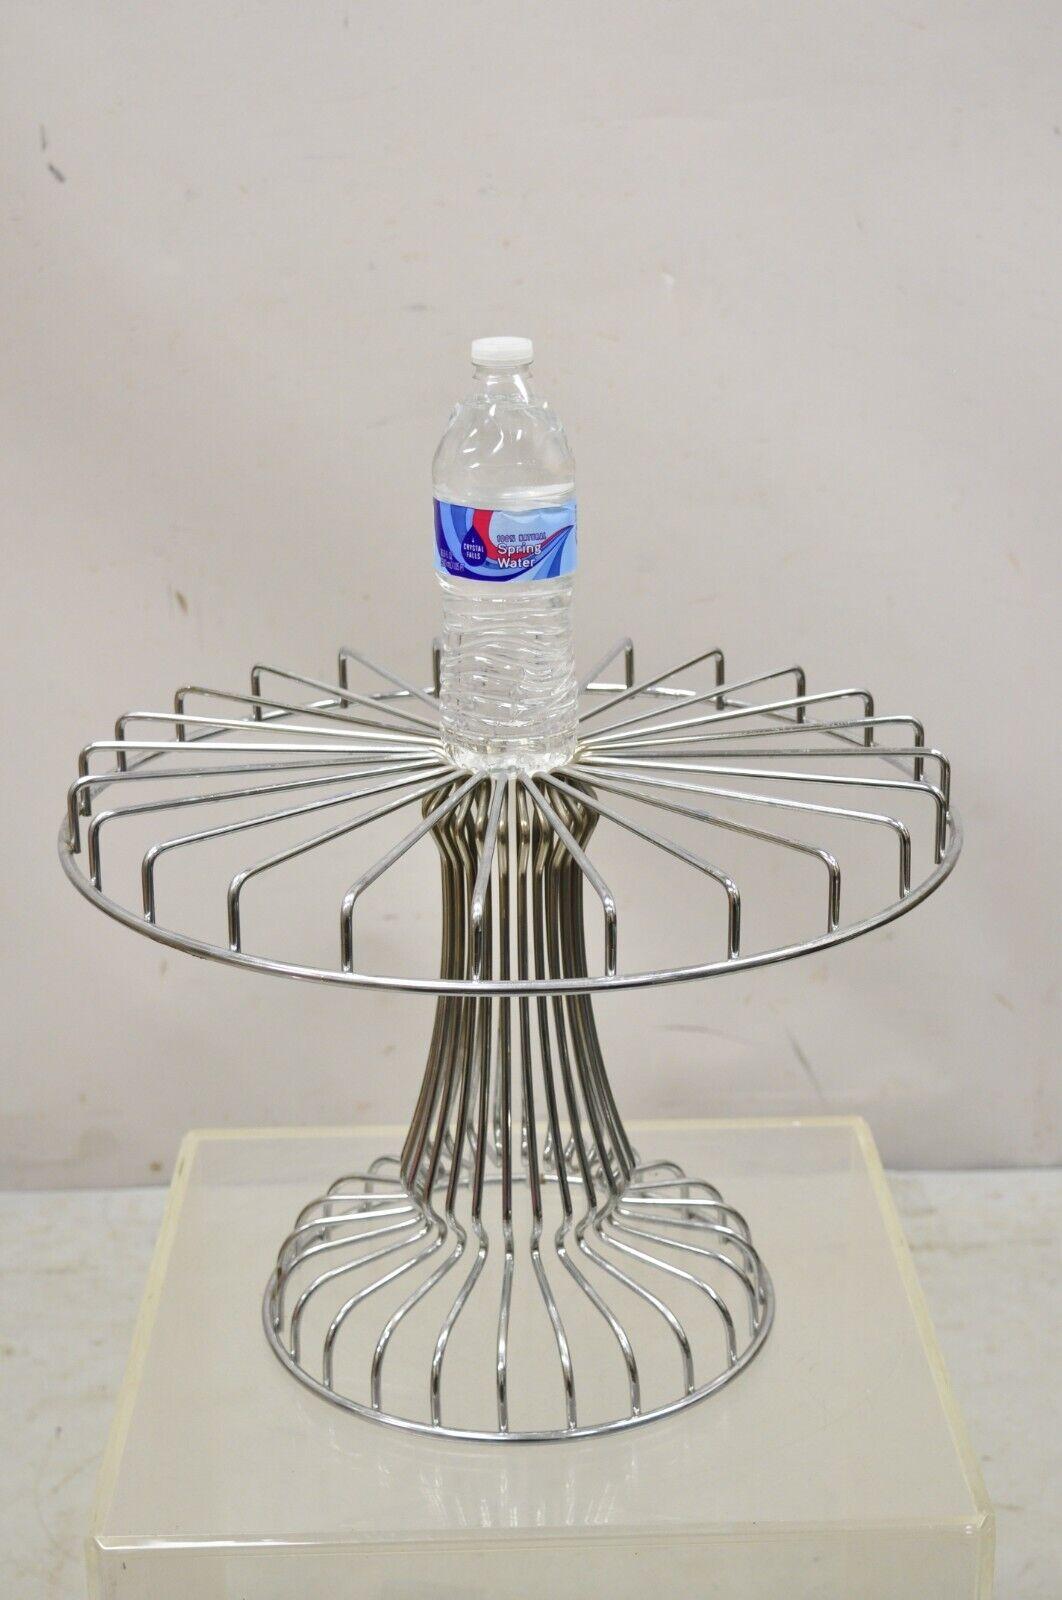 Vintage Mid Century Modern Chrome Metal Wire Pedestal Cake Stand. L'article est similaire aux œuvres de Mathieu Mategot, cadre en métal, lignes modernistes épurées, grand style et forme. Circa Mid to Late 20th Century. Mesures : 12